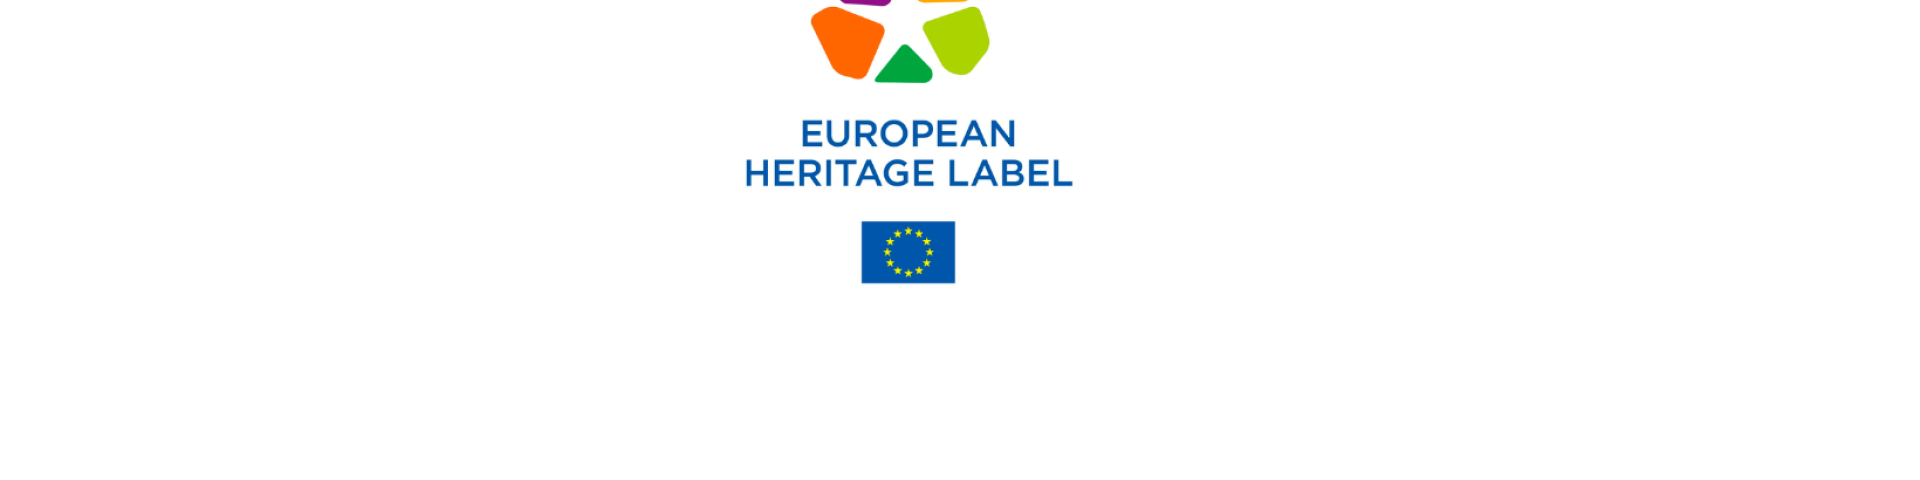 Unesco Heritage Label